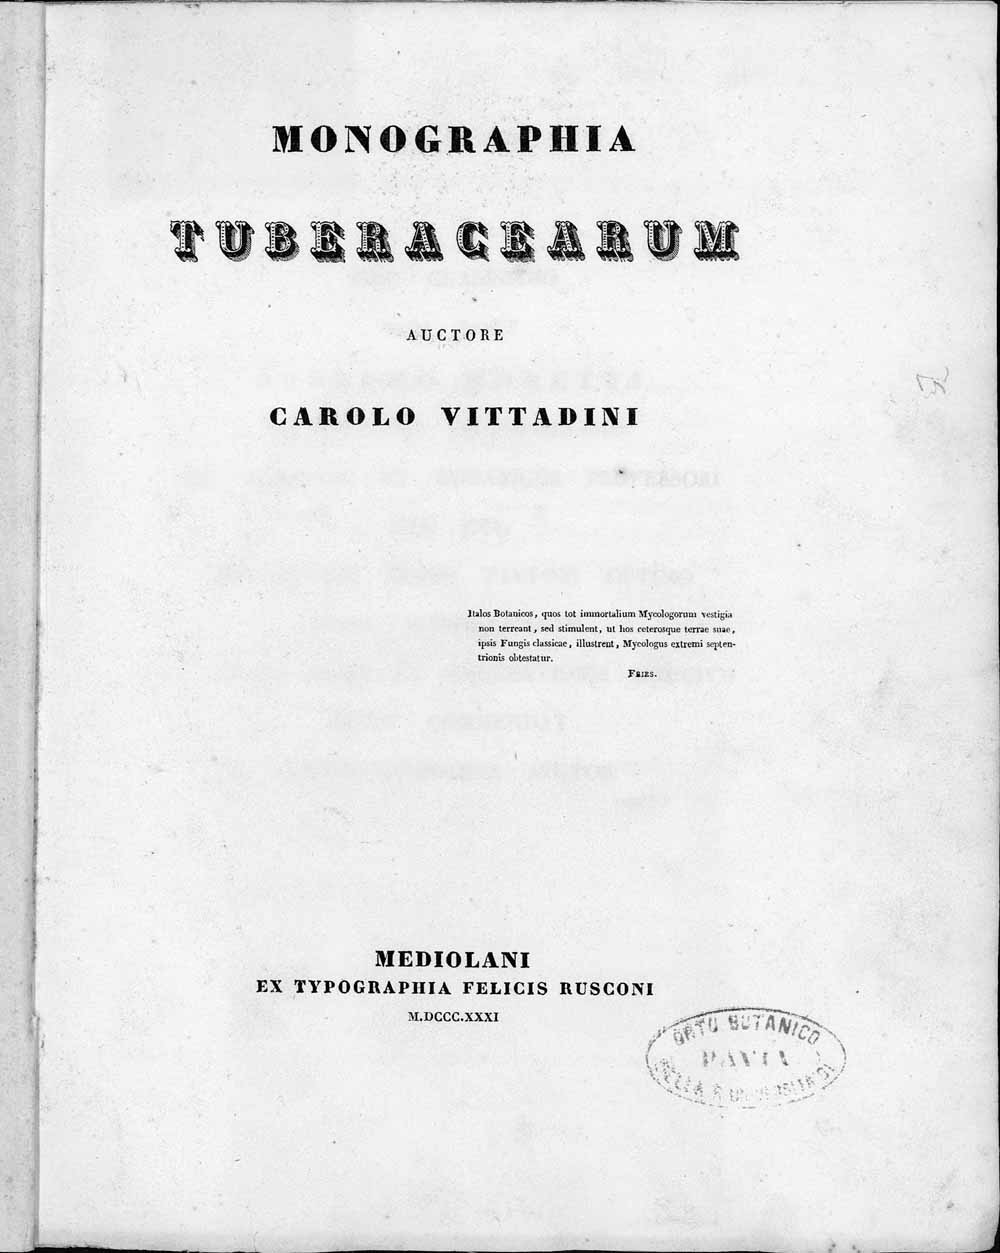 Frontespizio della Monographia Tuberacearum pubblicata a Milano nel 1831.